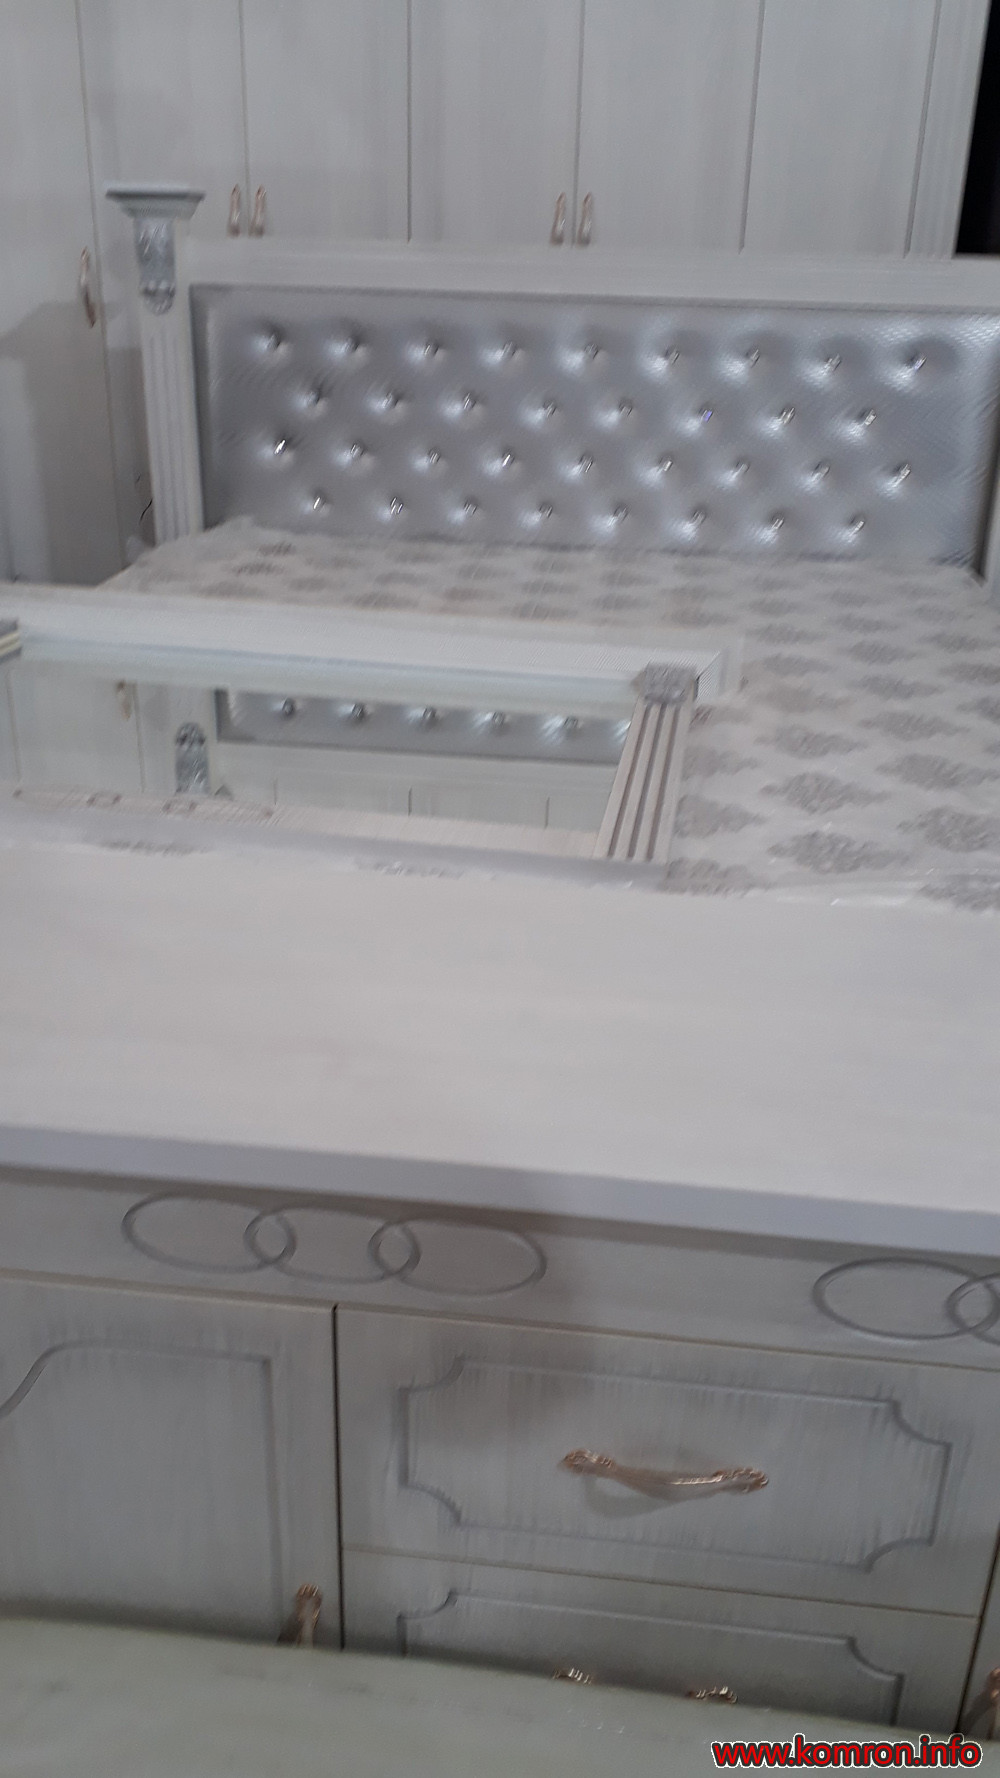 Квадратный белый кровать по цене 415 $